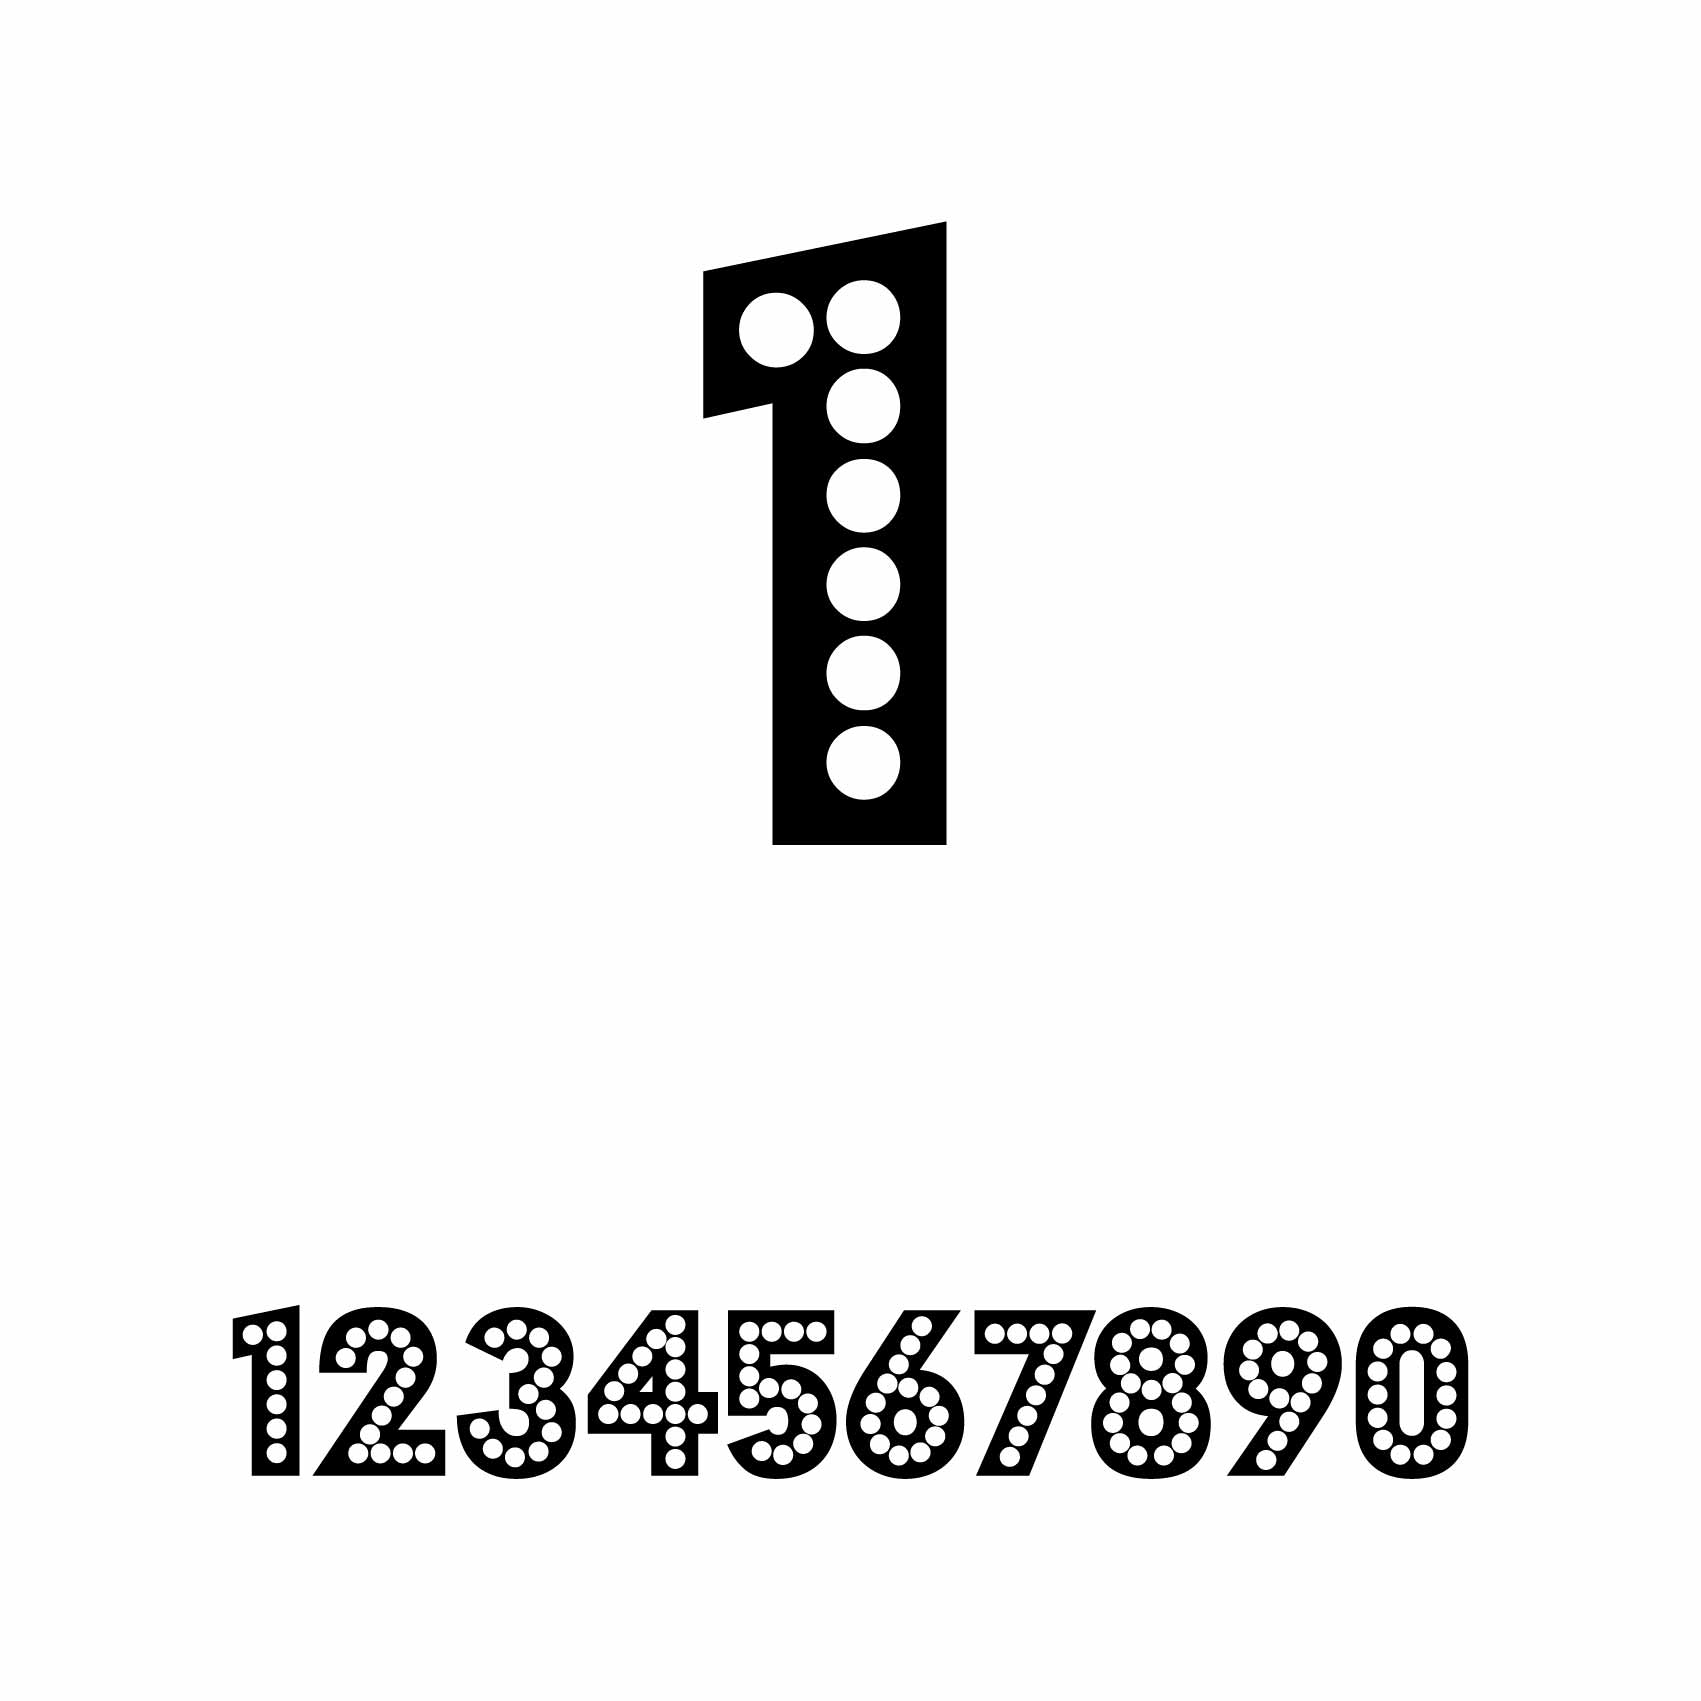 stickers-numéro-personnalisé-ref6numero-autocollant-numero-personnalise-sticker-chiffre-personnalisable-nombre-rallye-porte-1-2-3-4-5-6-7-8-9-0-lettrage